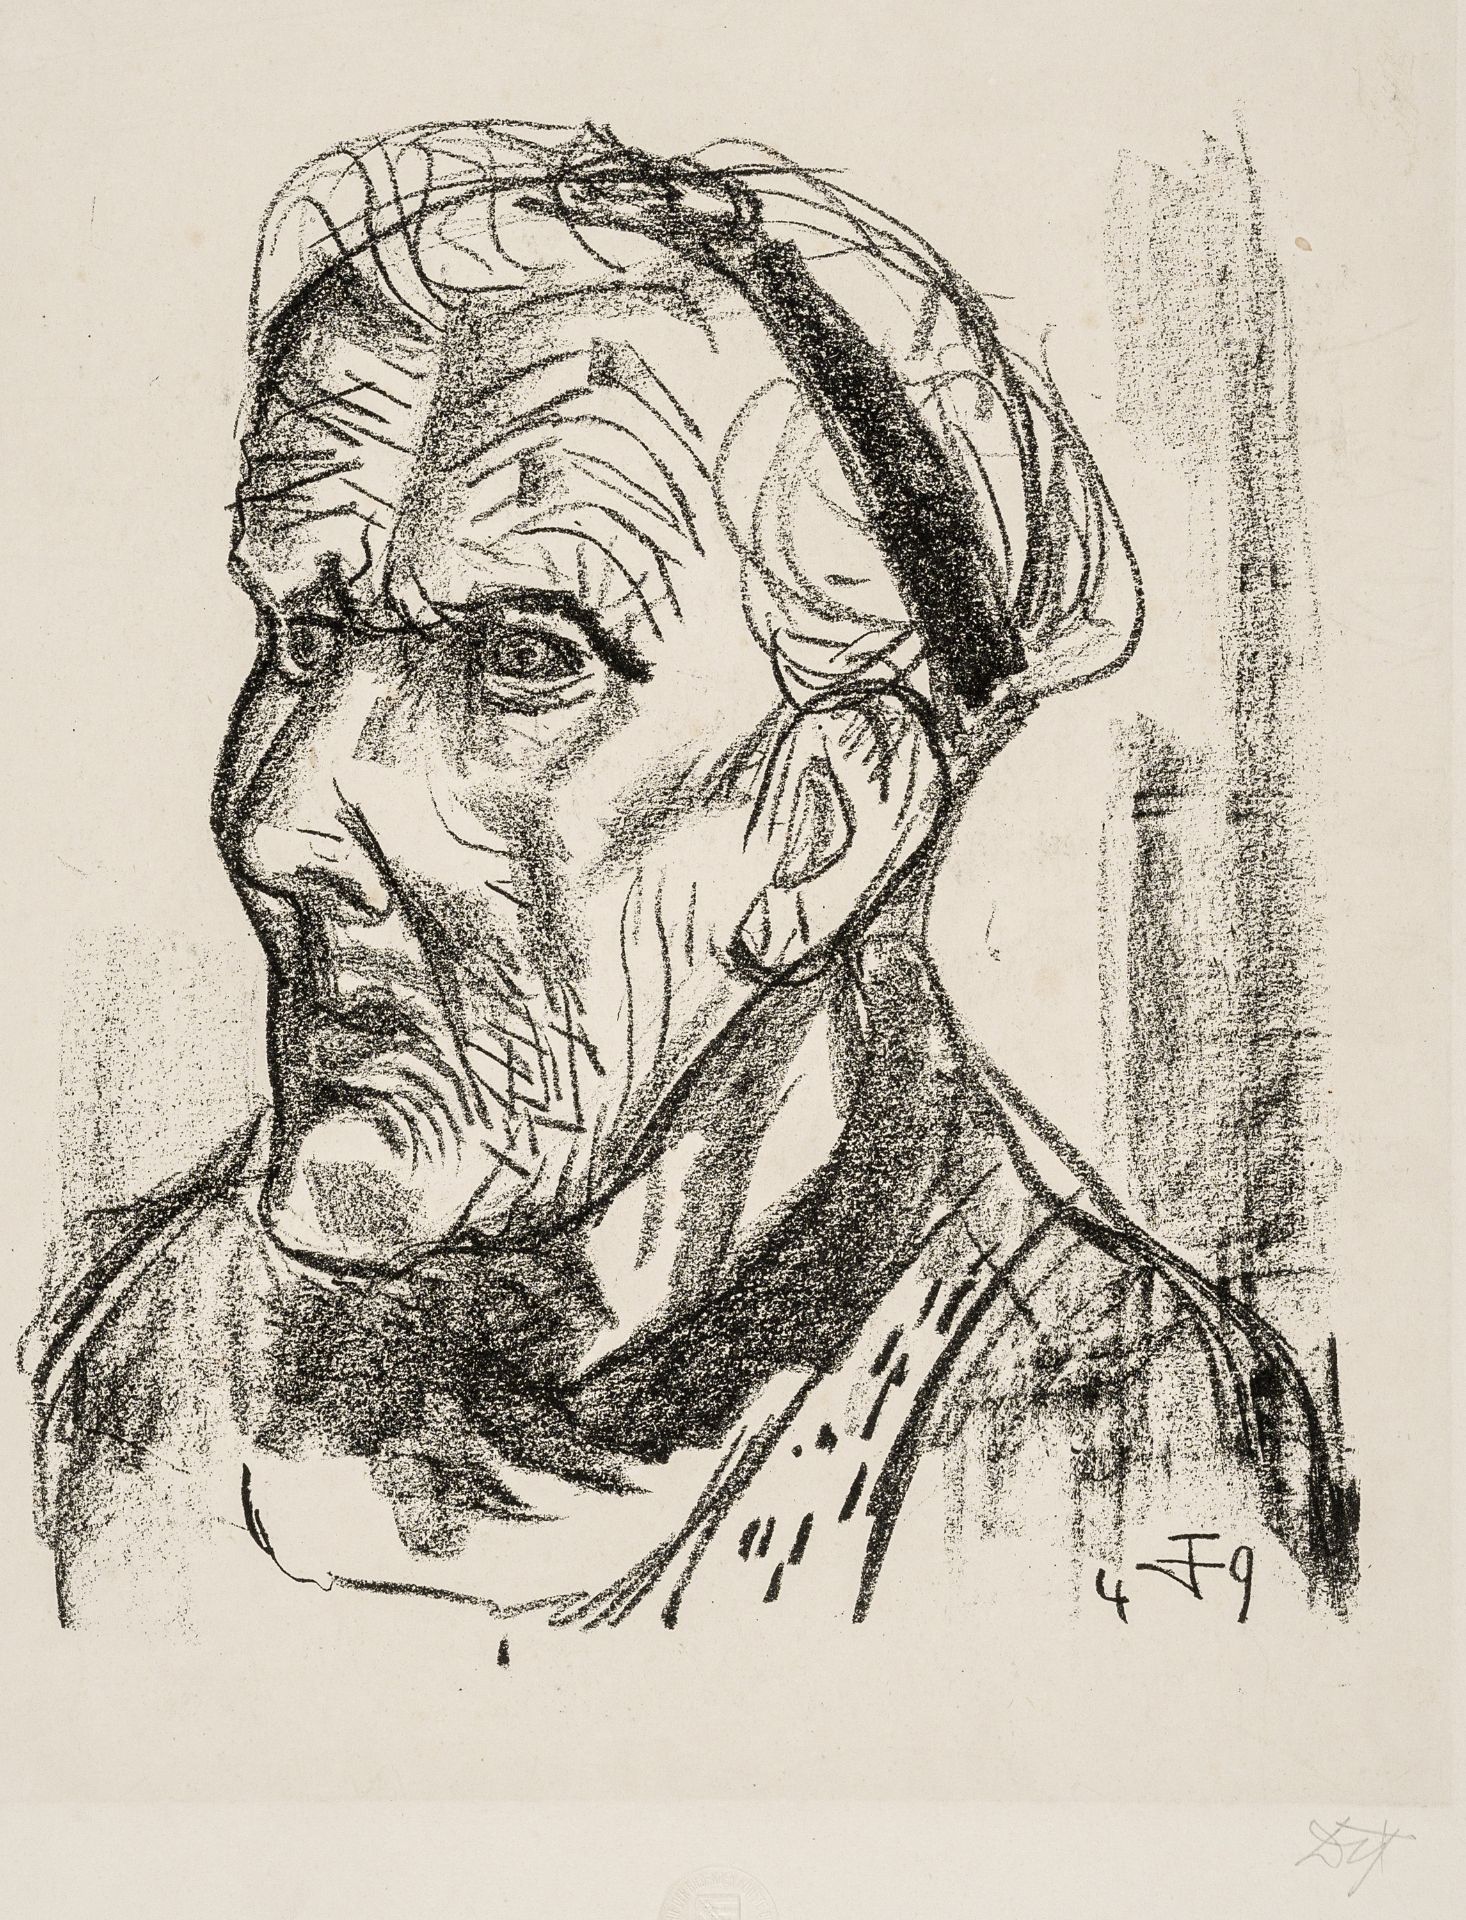 Otto Dix "Meine Mutter 86 Jahre alt, III". 1949.